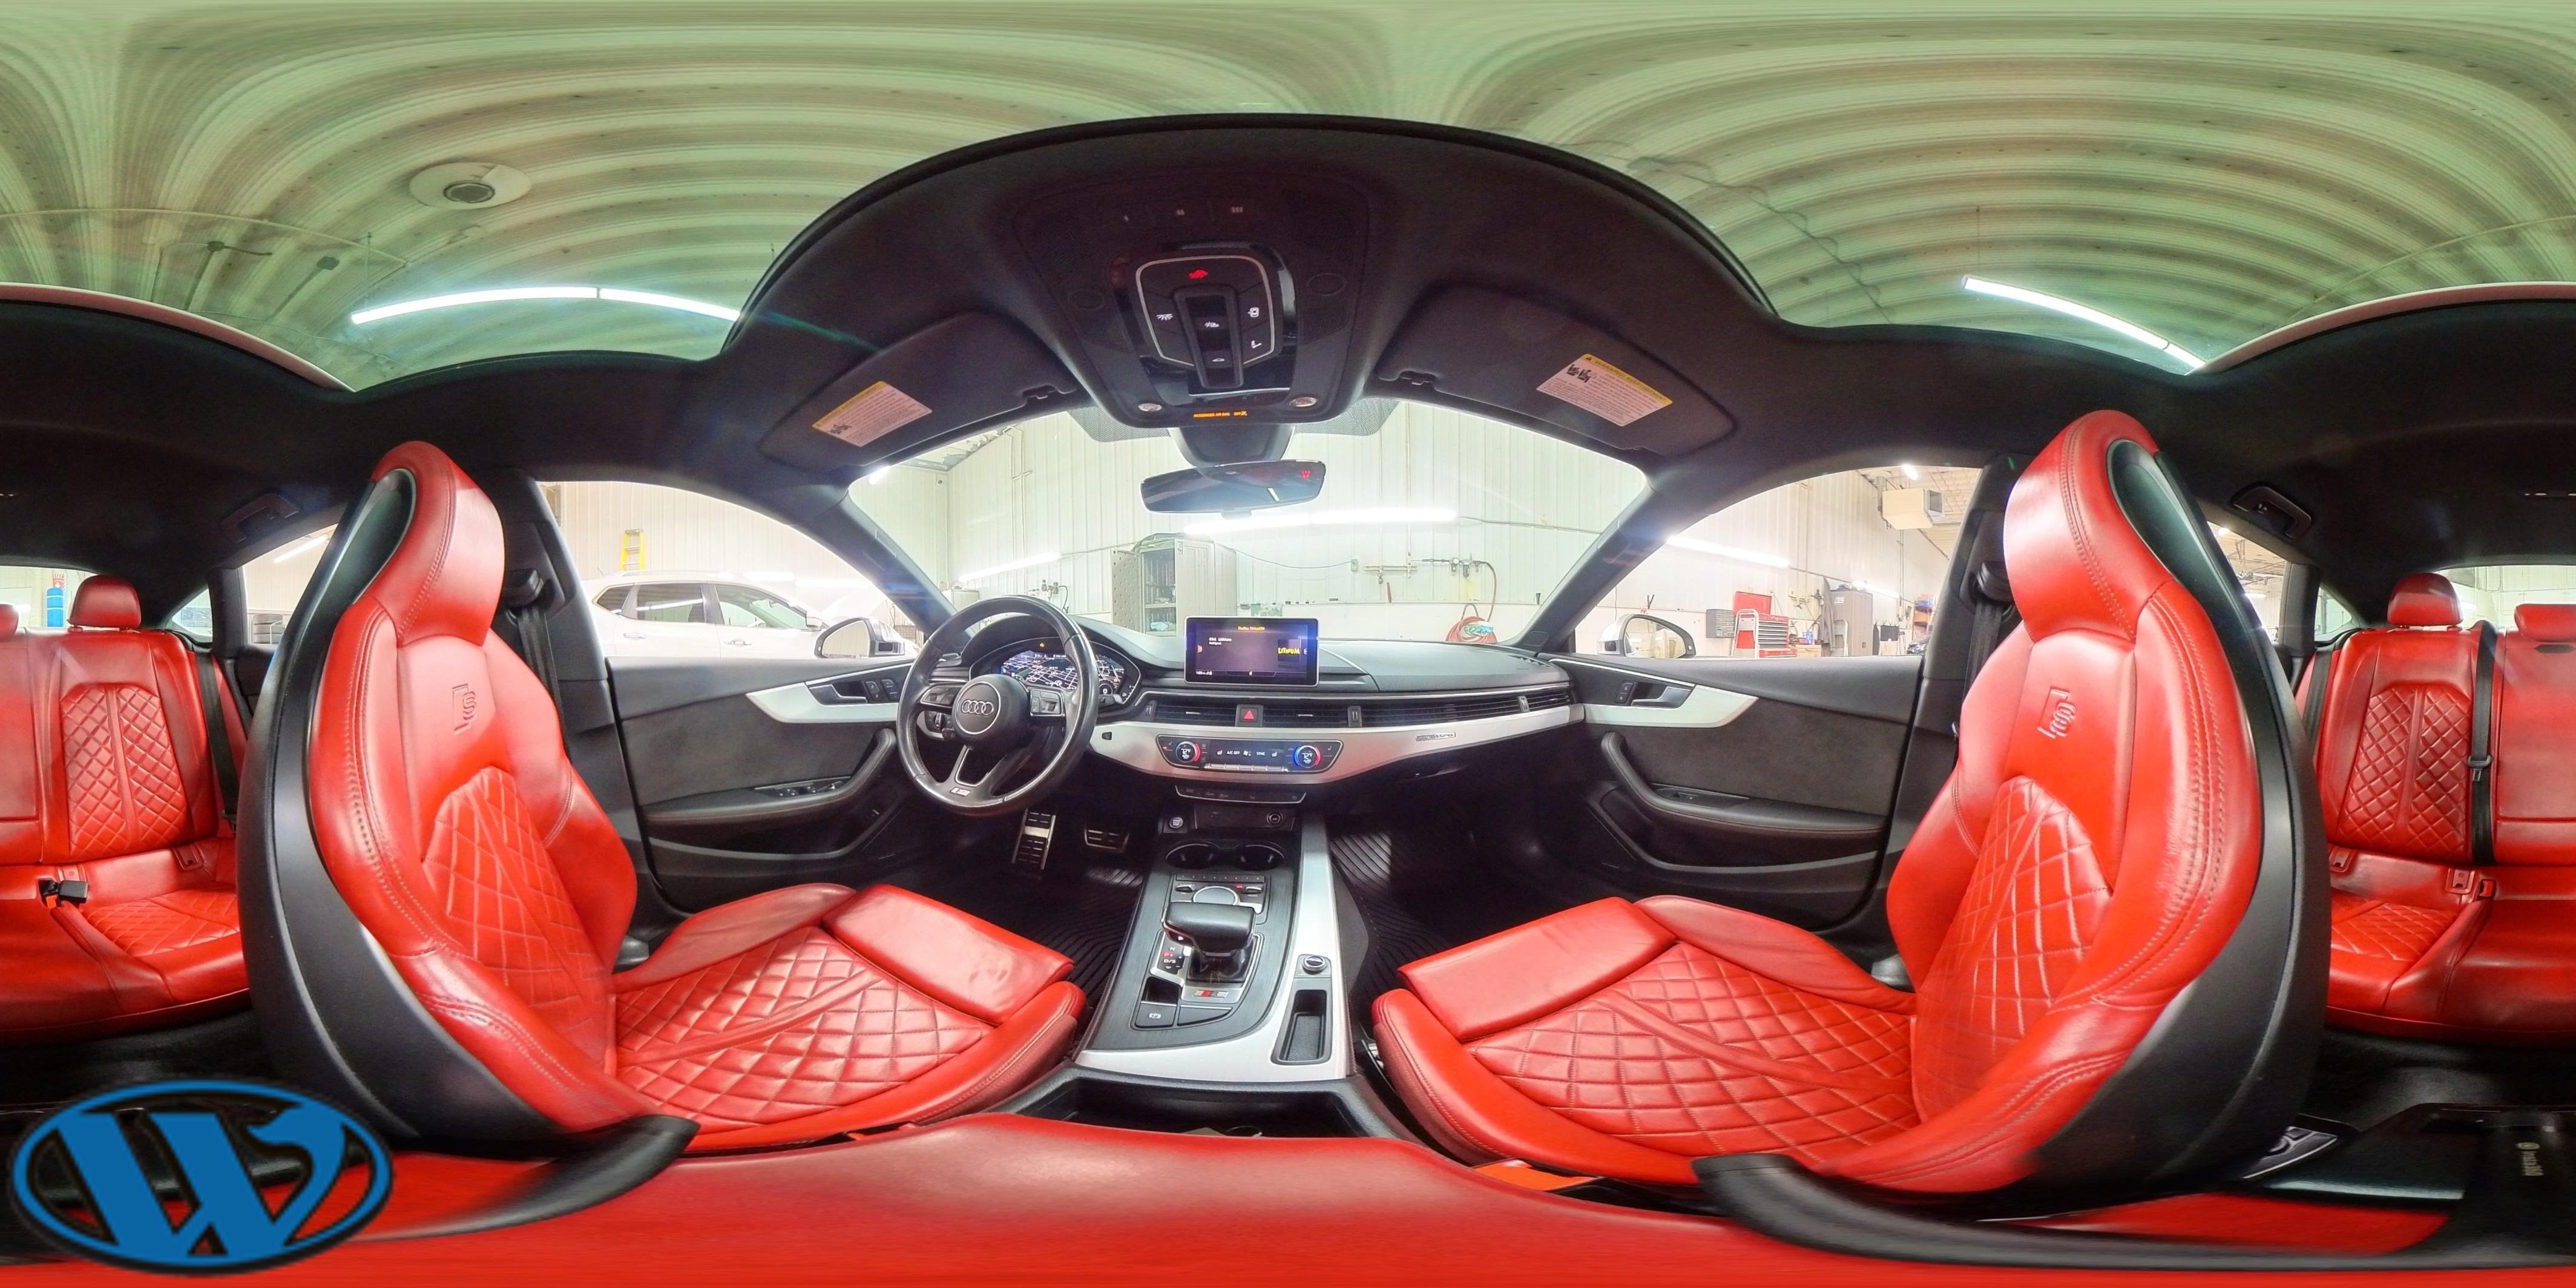 2018 Audi S5 Sportback Prestige